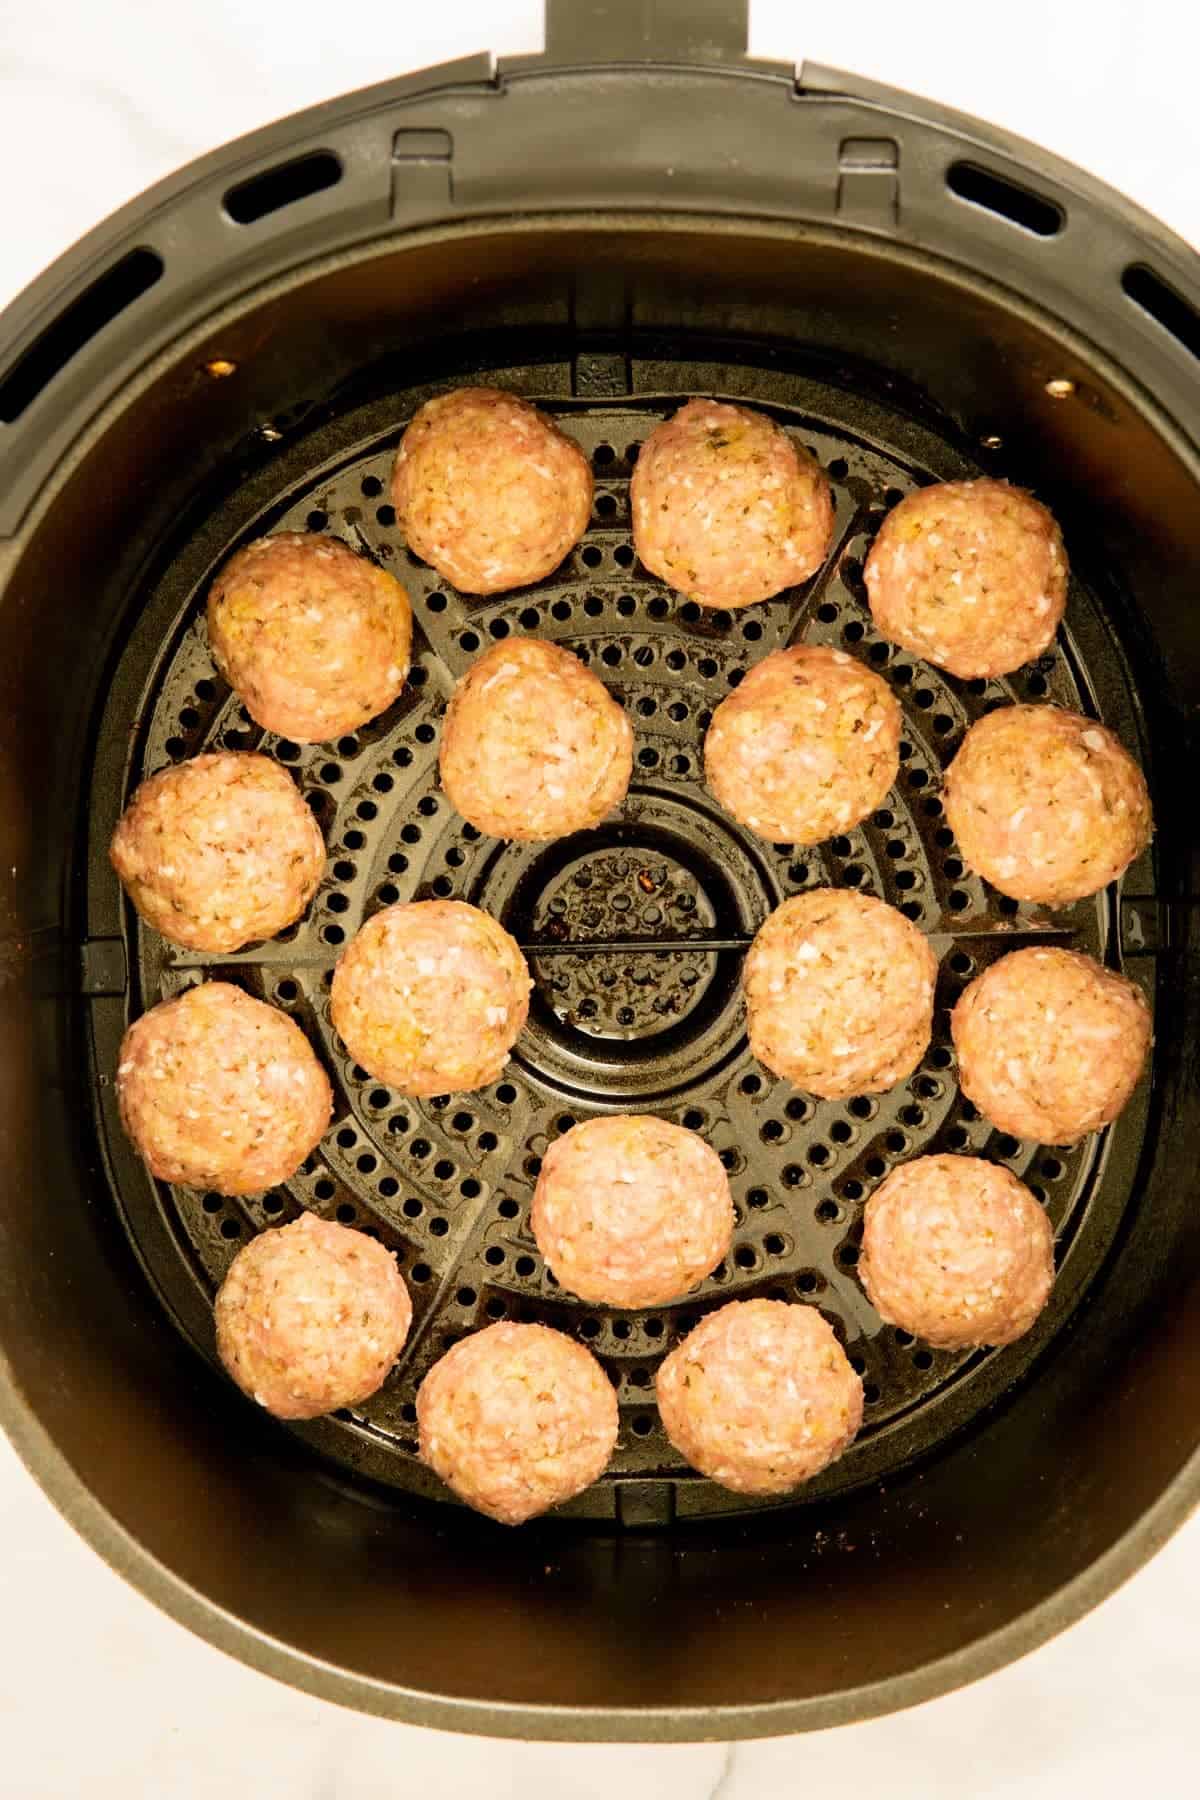 Raw turkey meatballs in an air fryer basket.